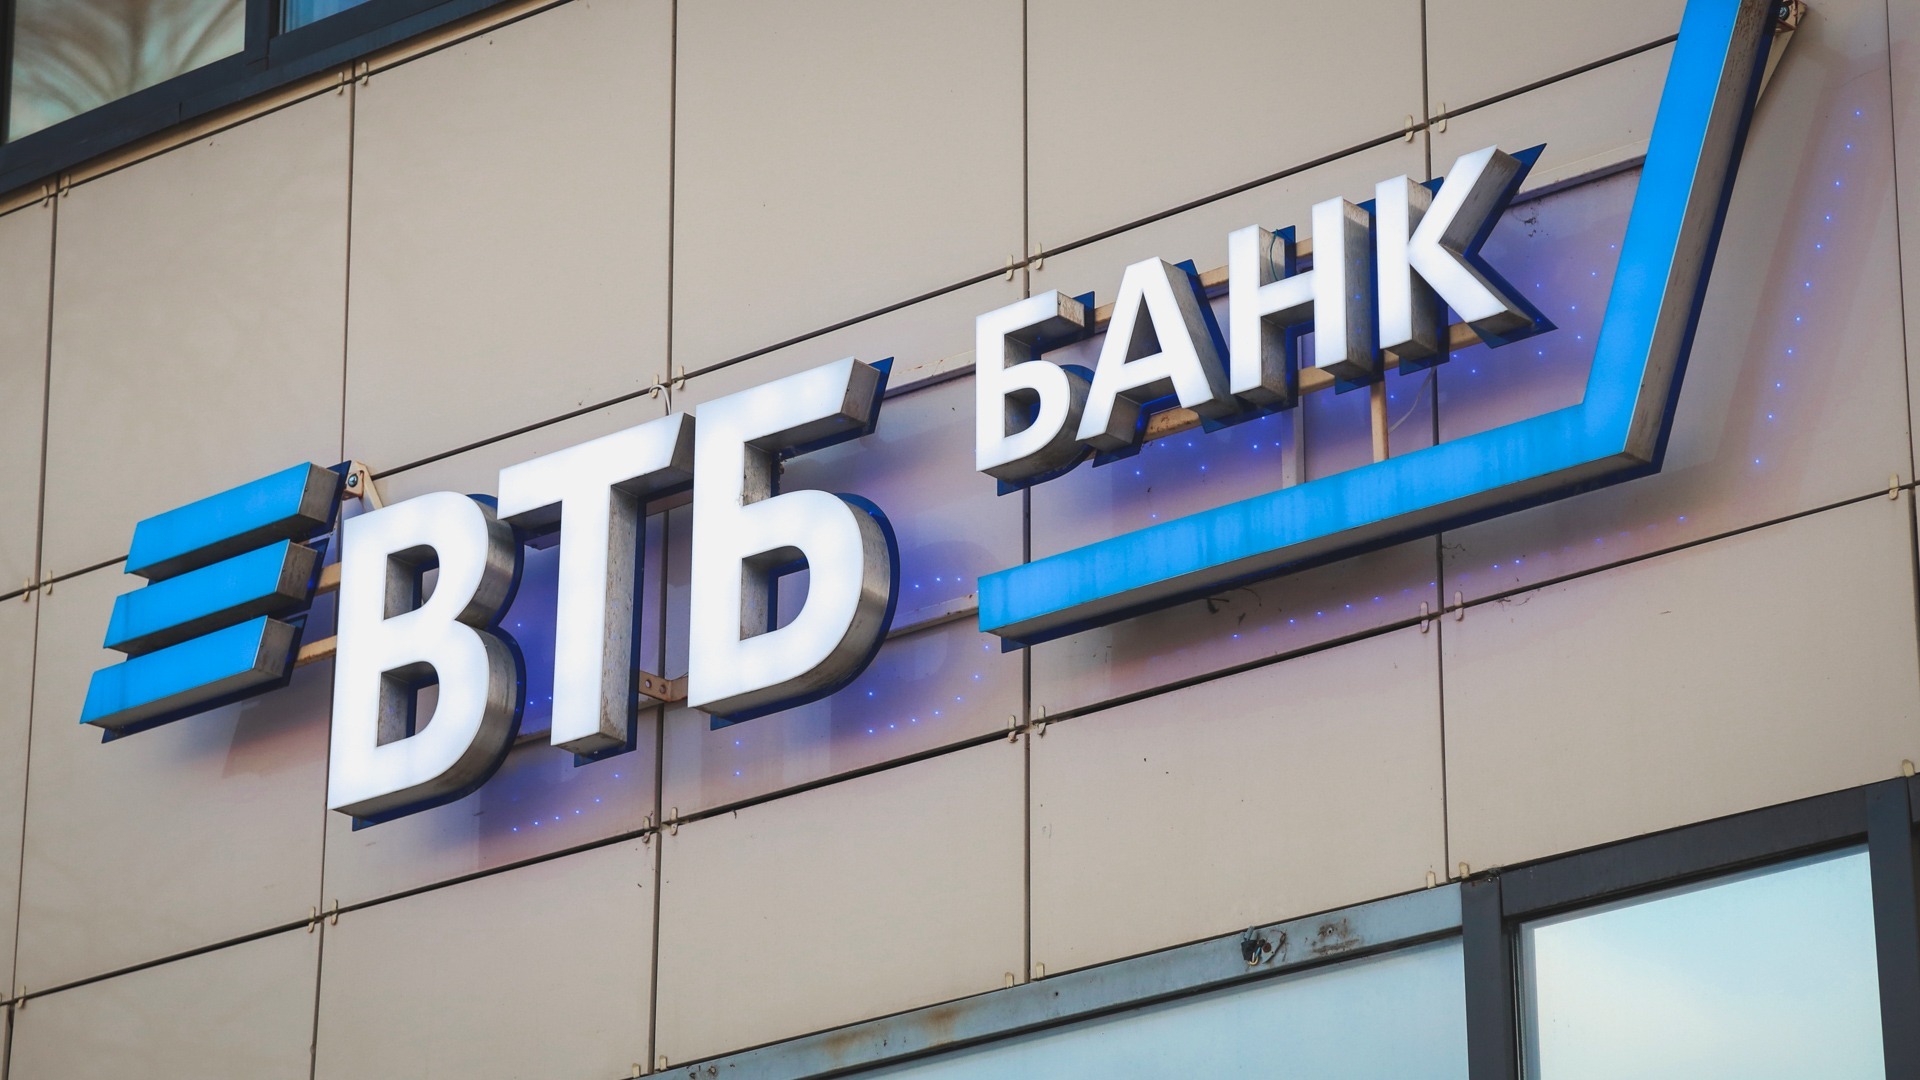 Глава ВТБ Андрей Костин определил главные направления развития банка до 2026 года